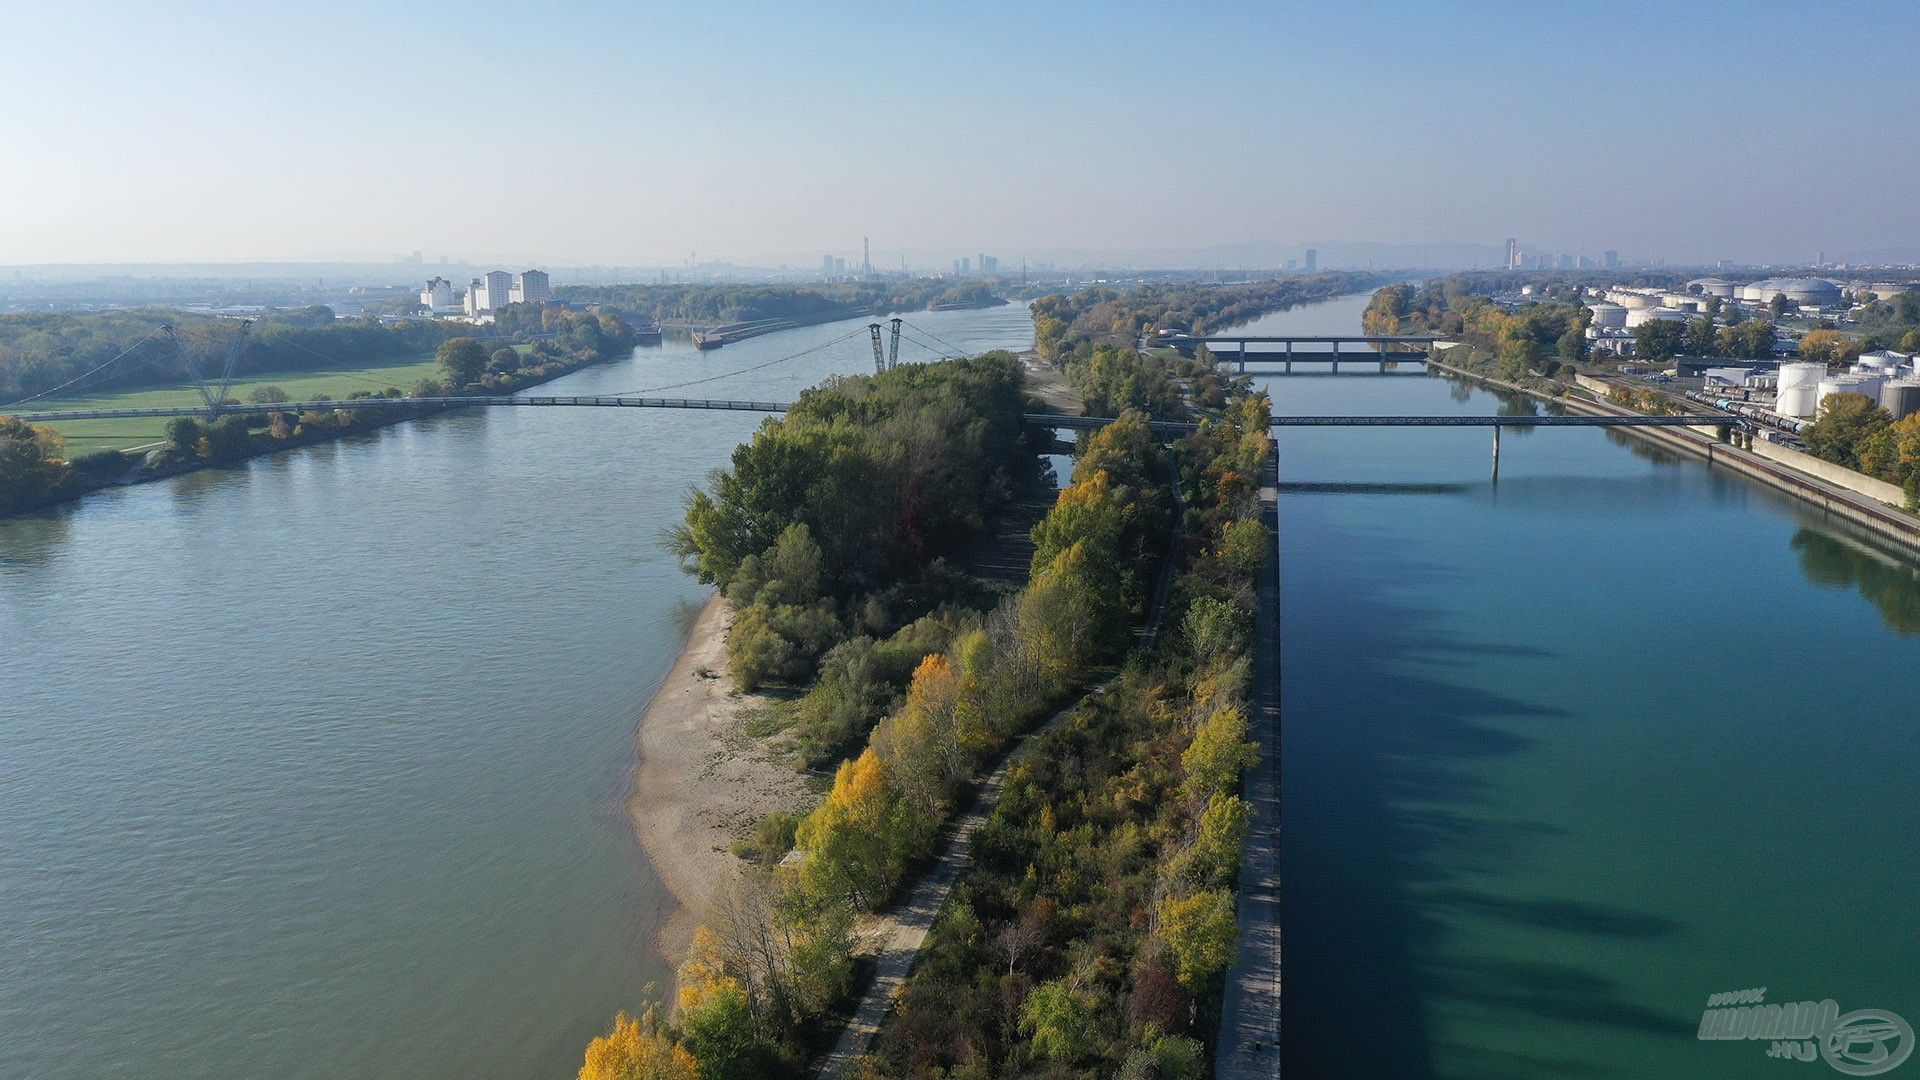 Bal oldalon a főmeder, jobb oldalon az Új-Duna, amely a folyóval párhuzamosan halad mintegy 21 km hosszam Bécs városán keresztül, az alsó-ausztriai Langenzersdorf községben a főfolyó csomópontjától, a 21. kerületen keresztül egészen a főfolyóval való összefolyásig. Árvízvédelmi célból épült az Új-Duna, amely elvezeti és tehermentesíti a főmedret, megvédve a fővárost. Vize lassan áramlik, egyes helyeken áll, mivel zsilipekkel szabályozott szakaszokról van szó